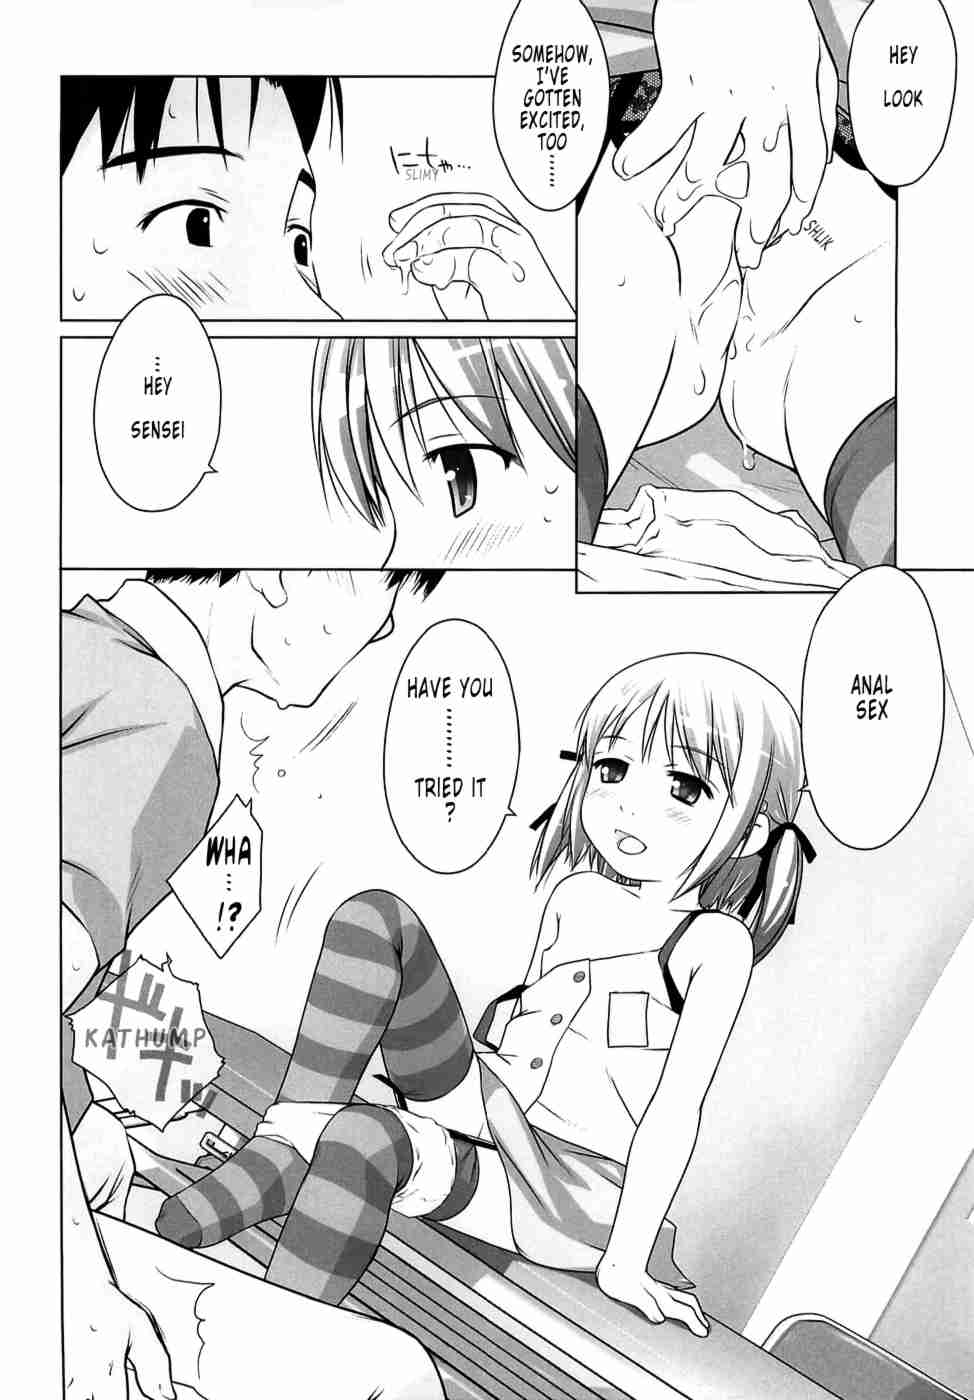 Reading Rori Ana Original Hentai By Ujiie Moku 1 Rori Ana End Page 82 Hentai Manga Online